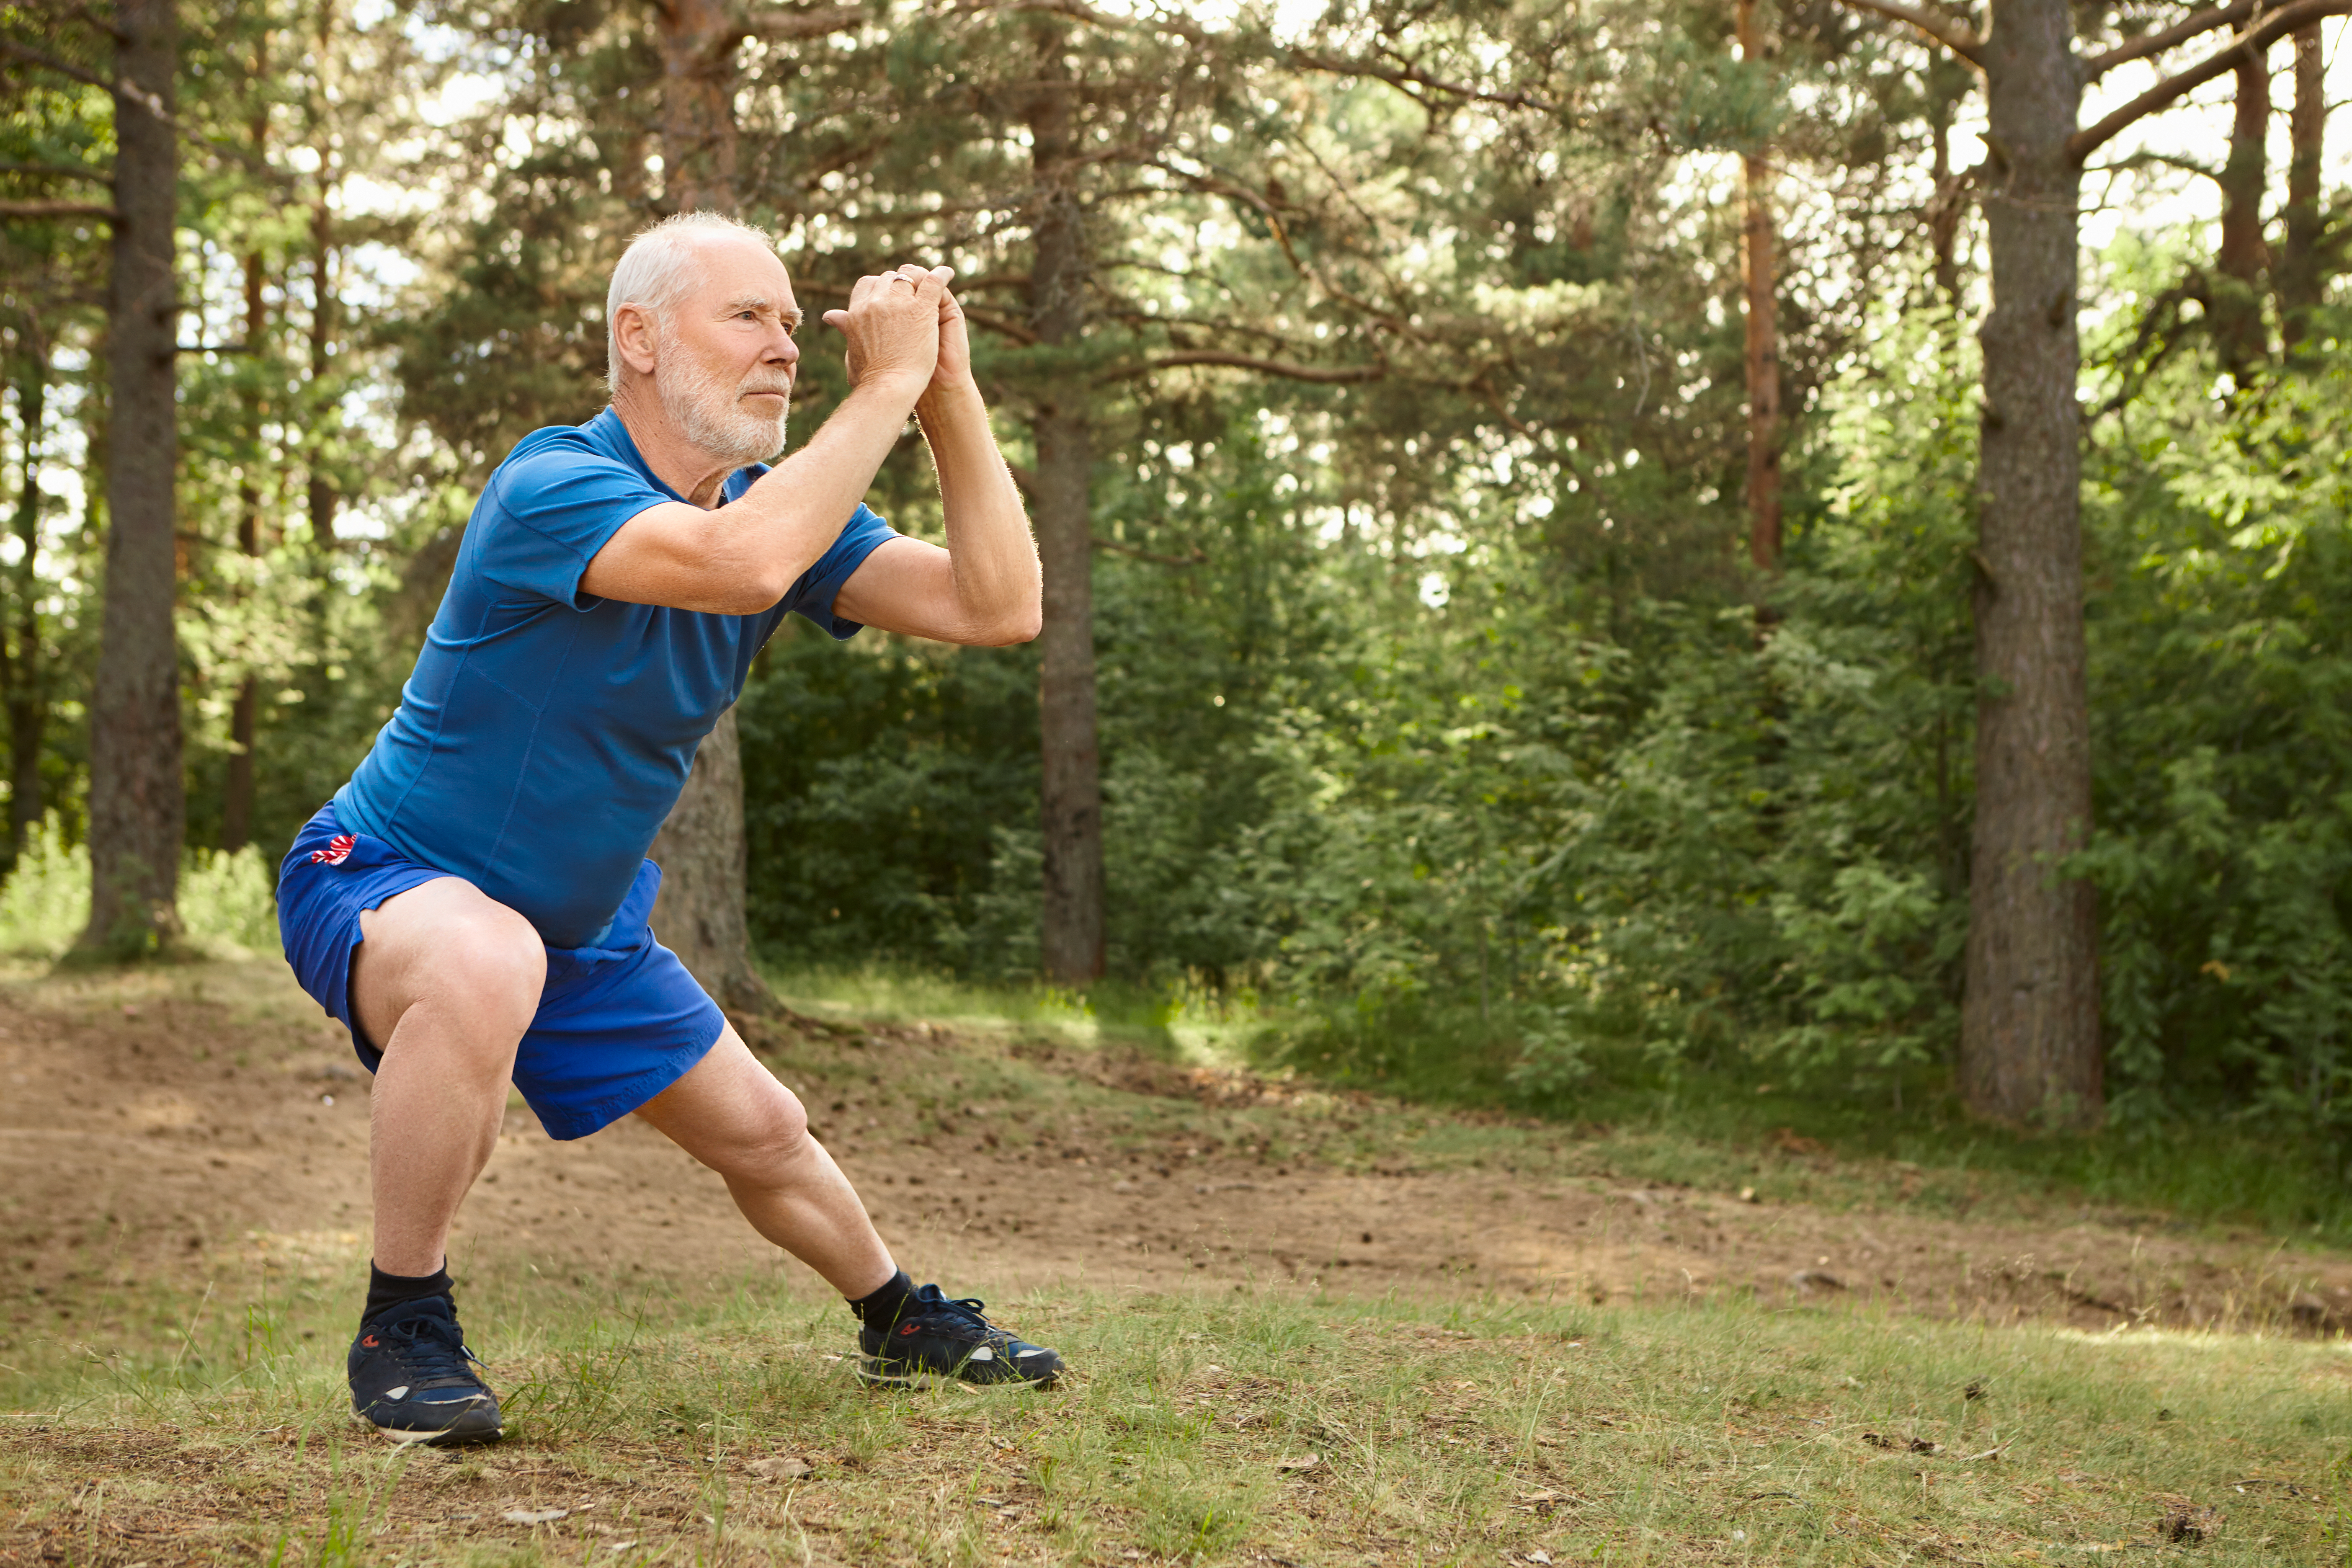 Calçado ortopédico e actividade física: como encontrar o equilíbrio 